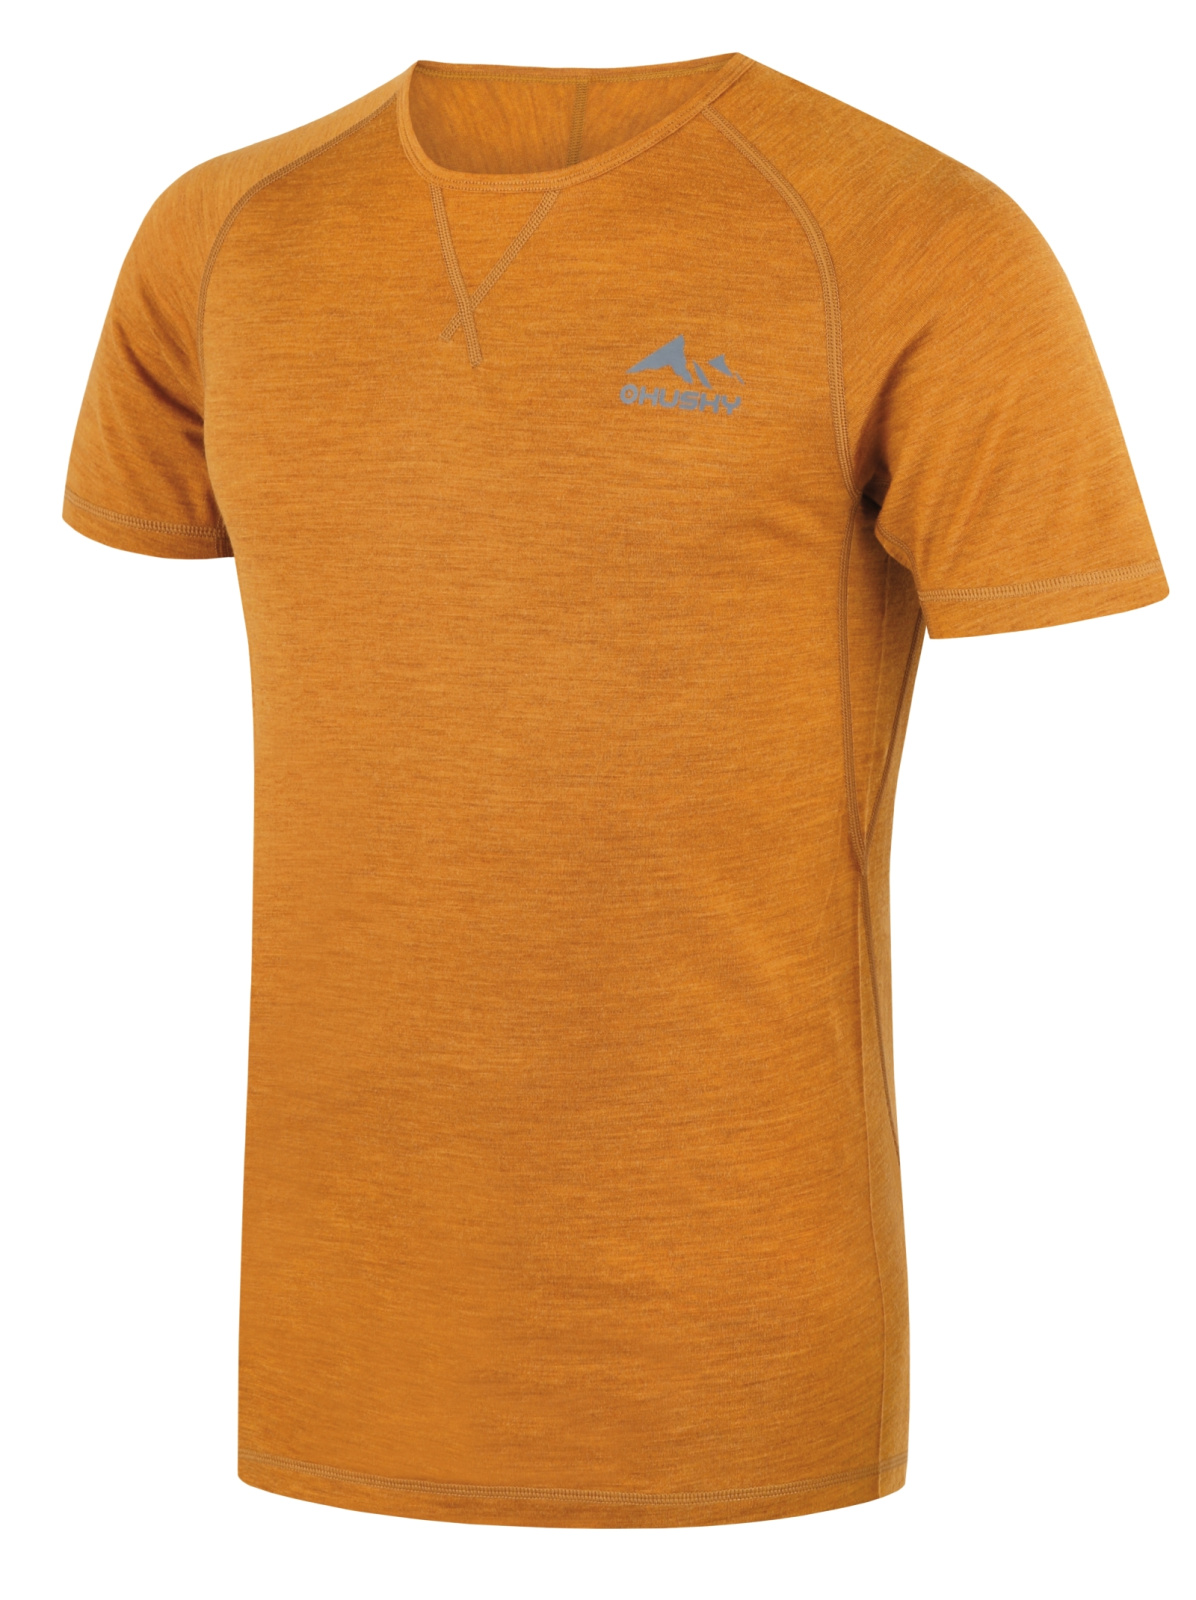 Husky Merino termoprádlo Mersa M mustard Velikost: XL pánské tričko s krátkým rukávem